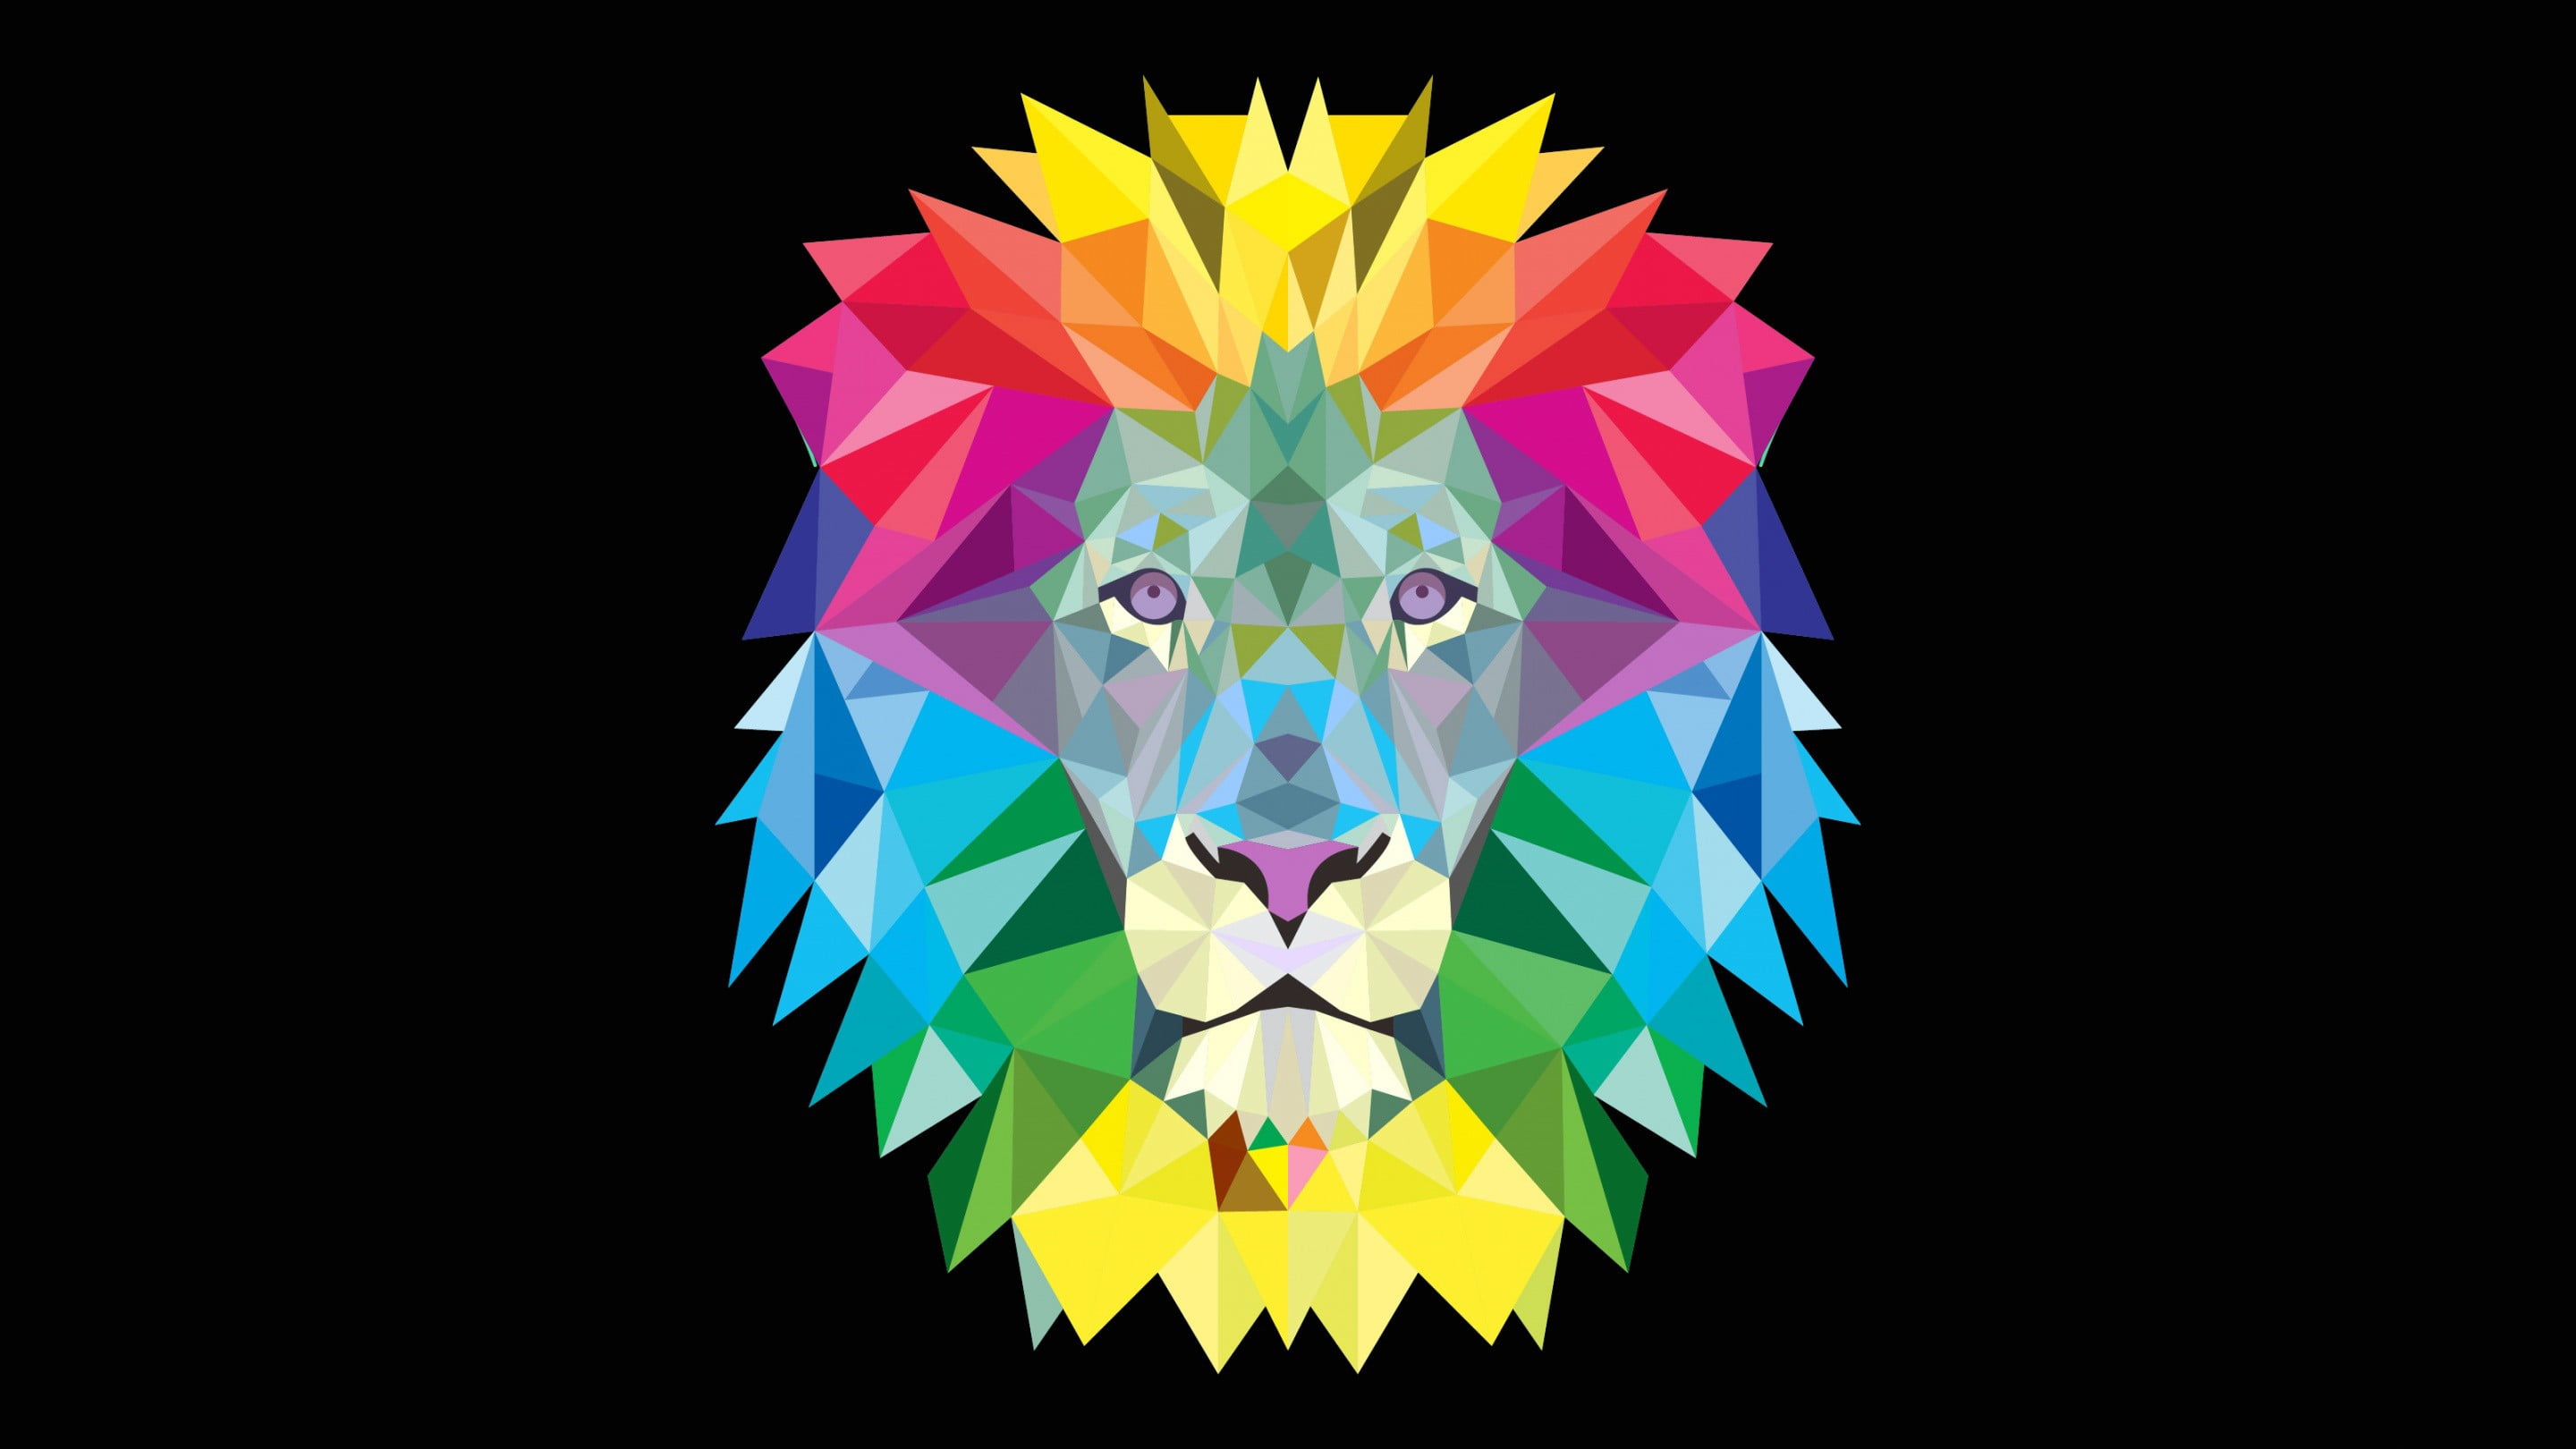 multicolored lion illustration, artwork, multi colored, yellow